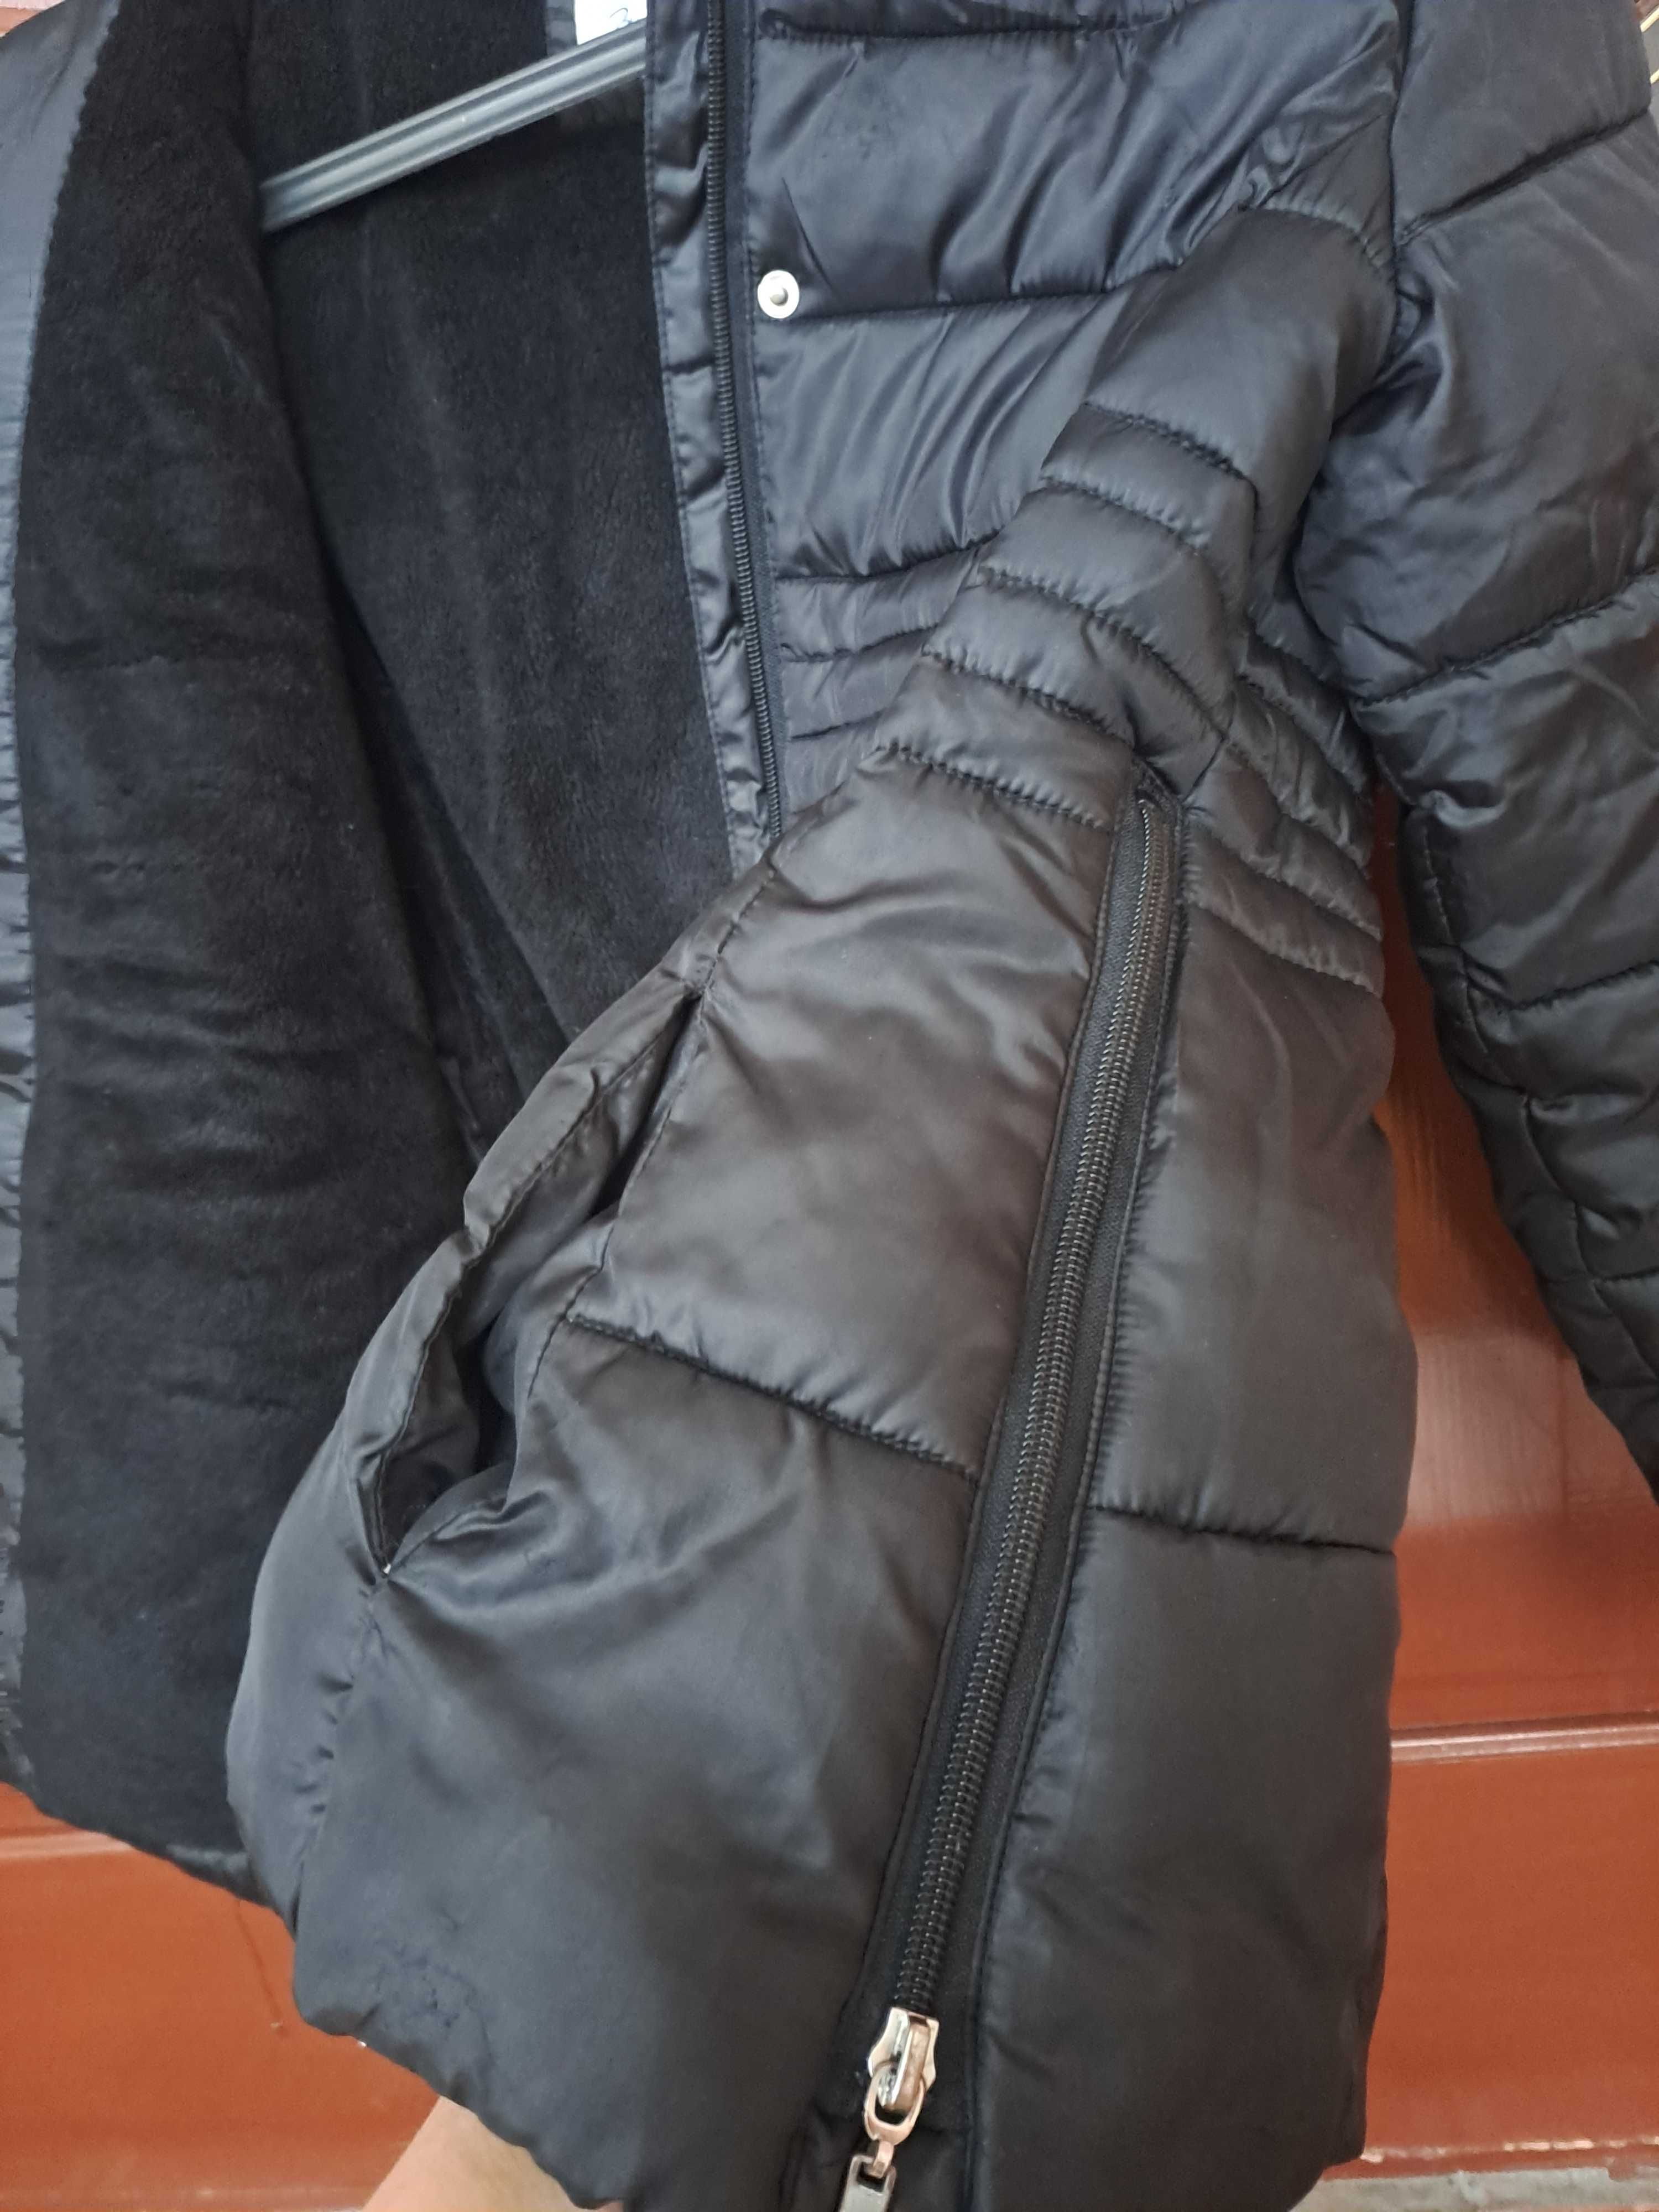 Тепленька курточка на дівчинку, 152р